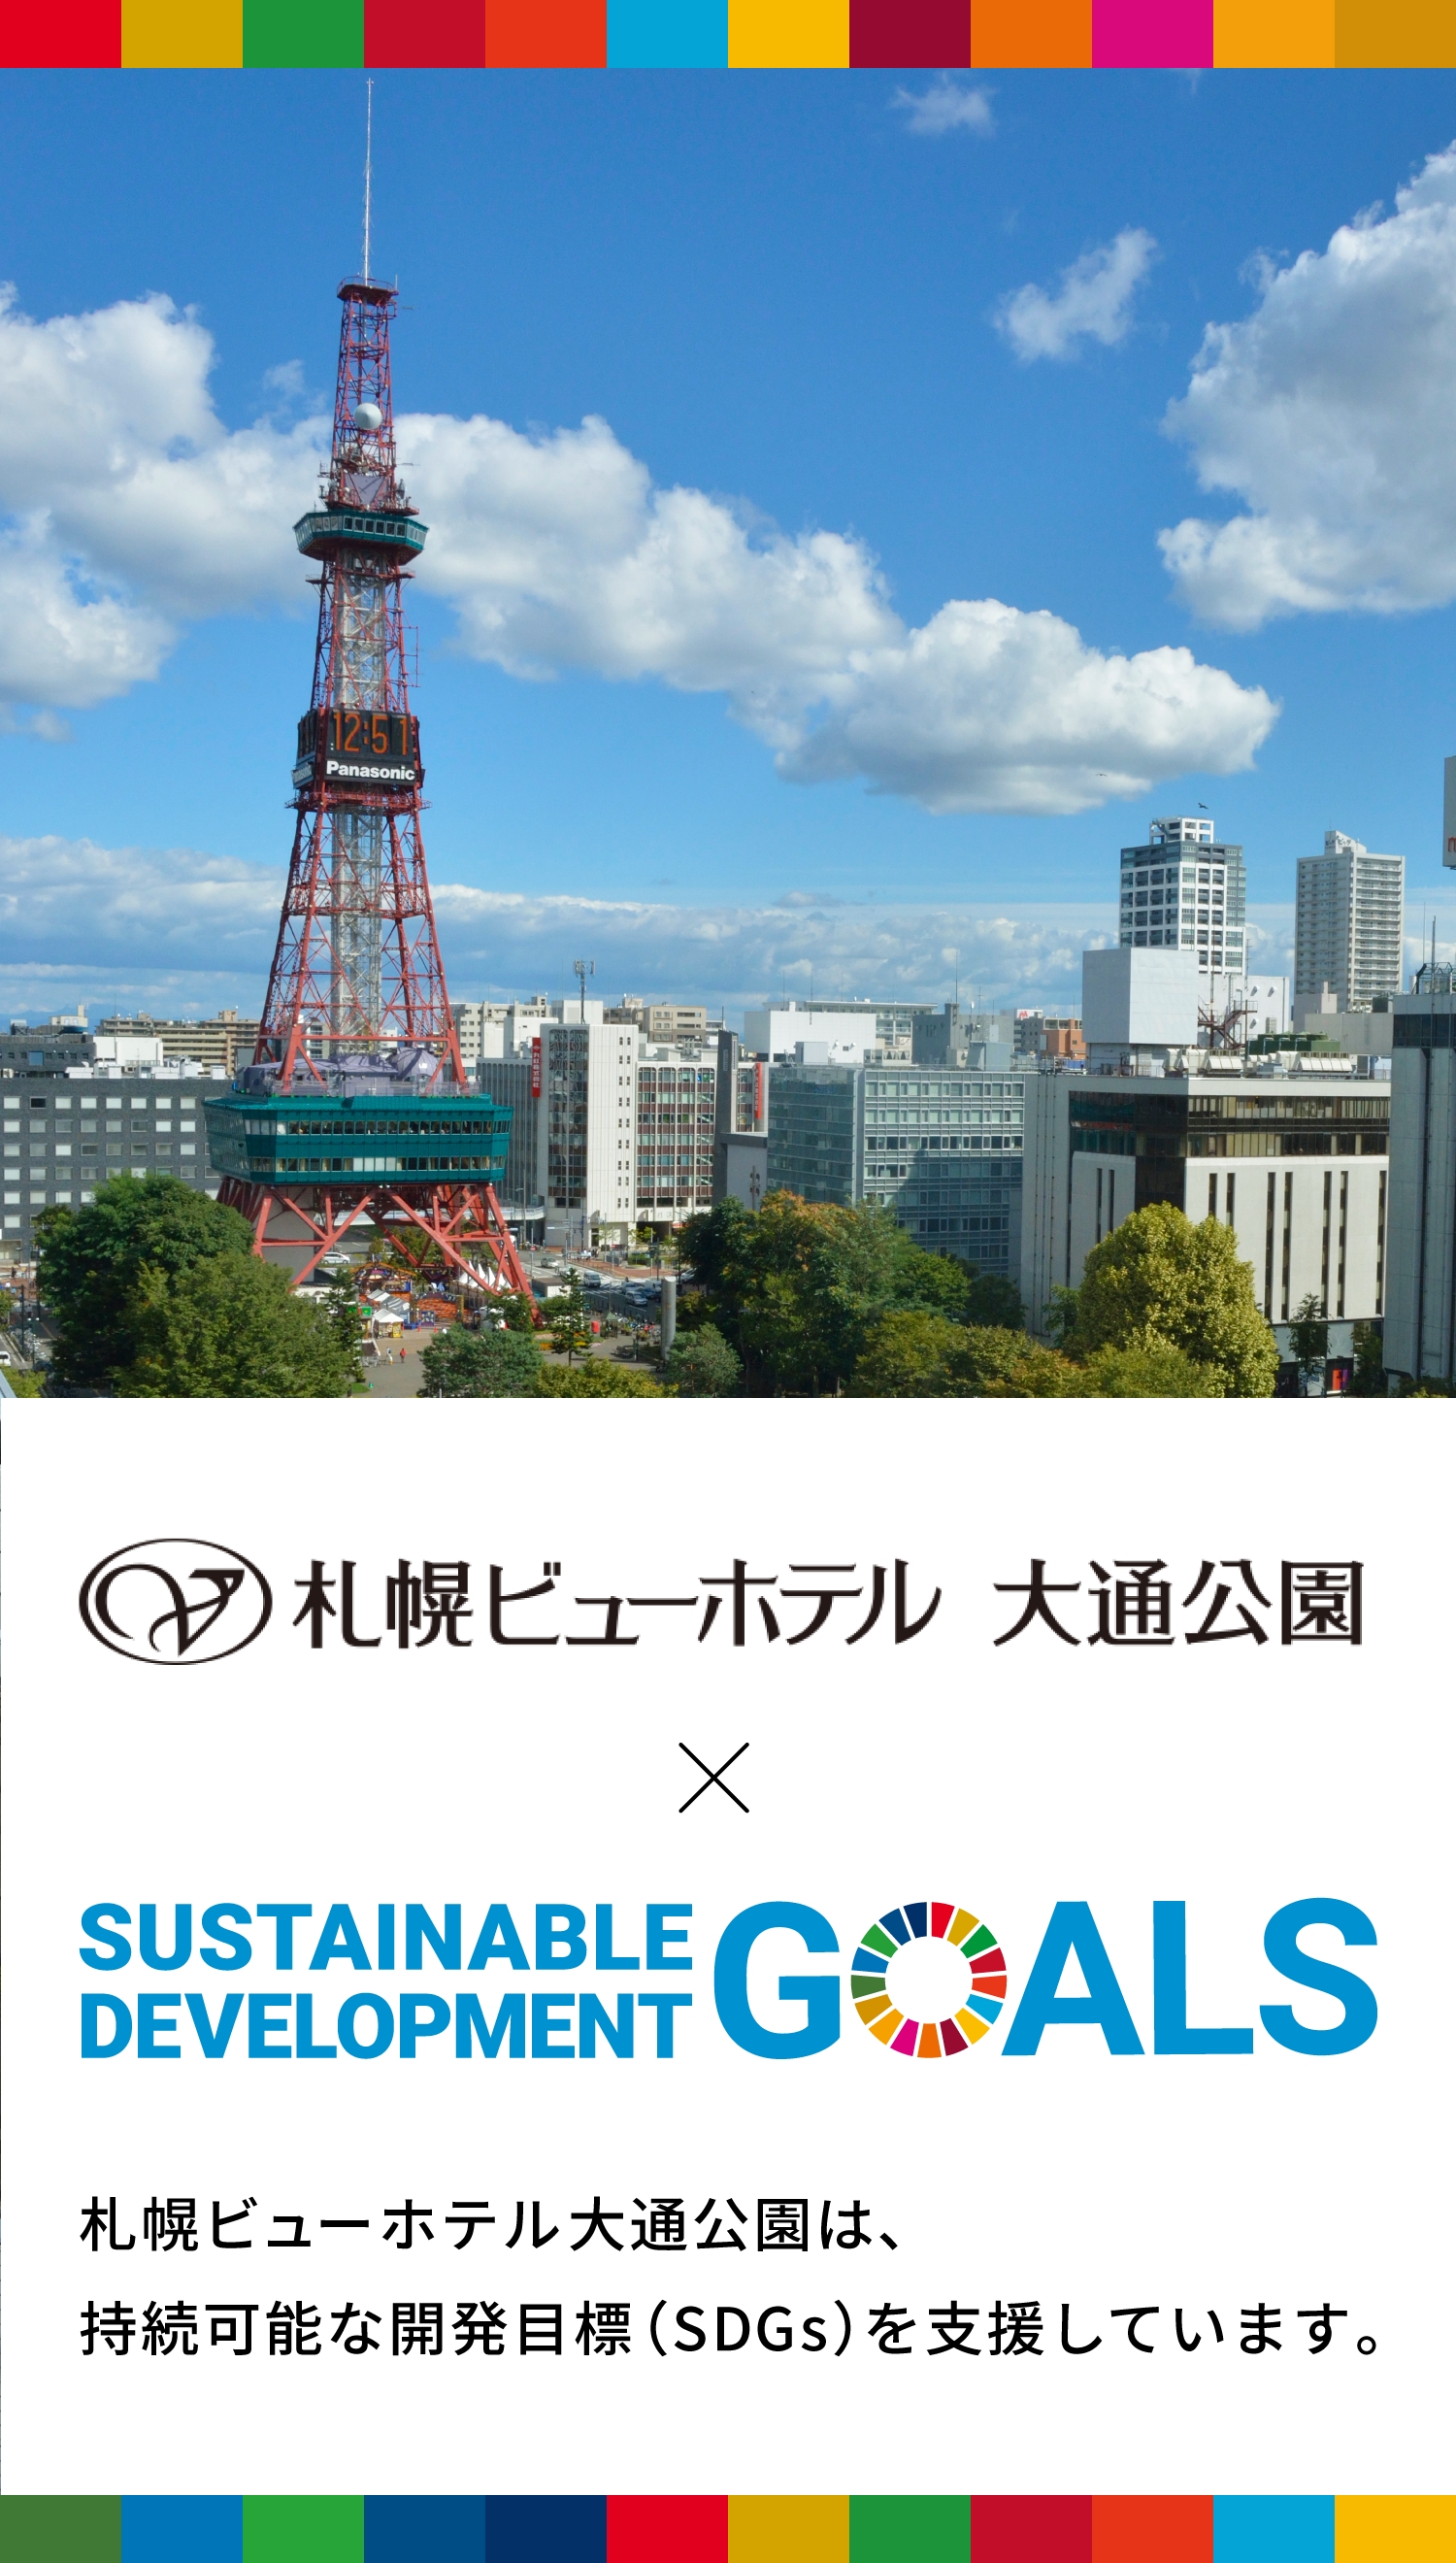 札幌ビューホテル 大通公園 SDGSの取組みついて